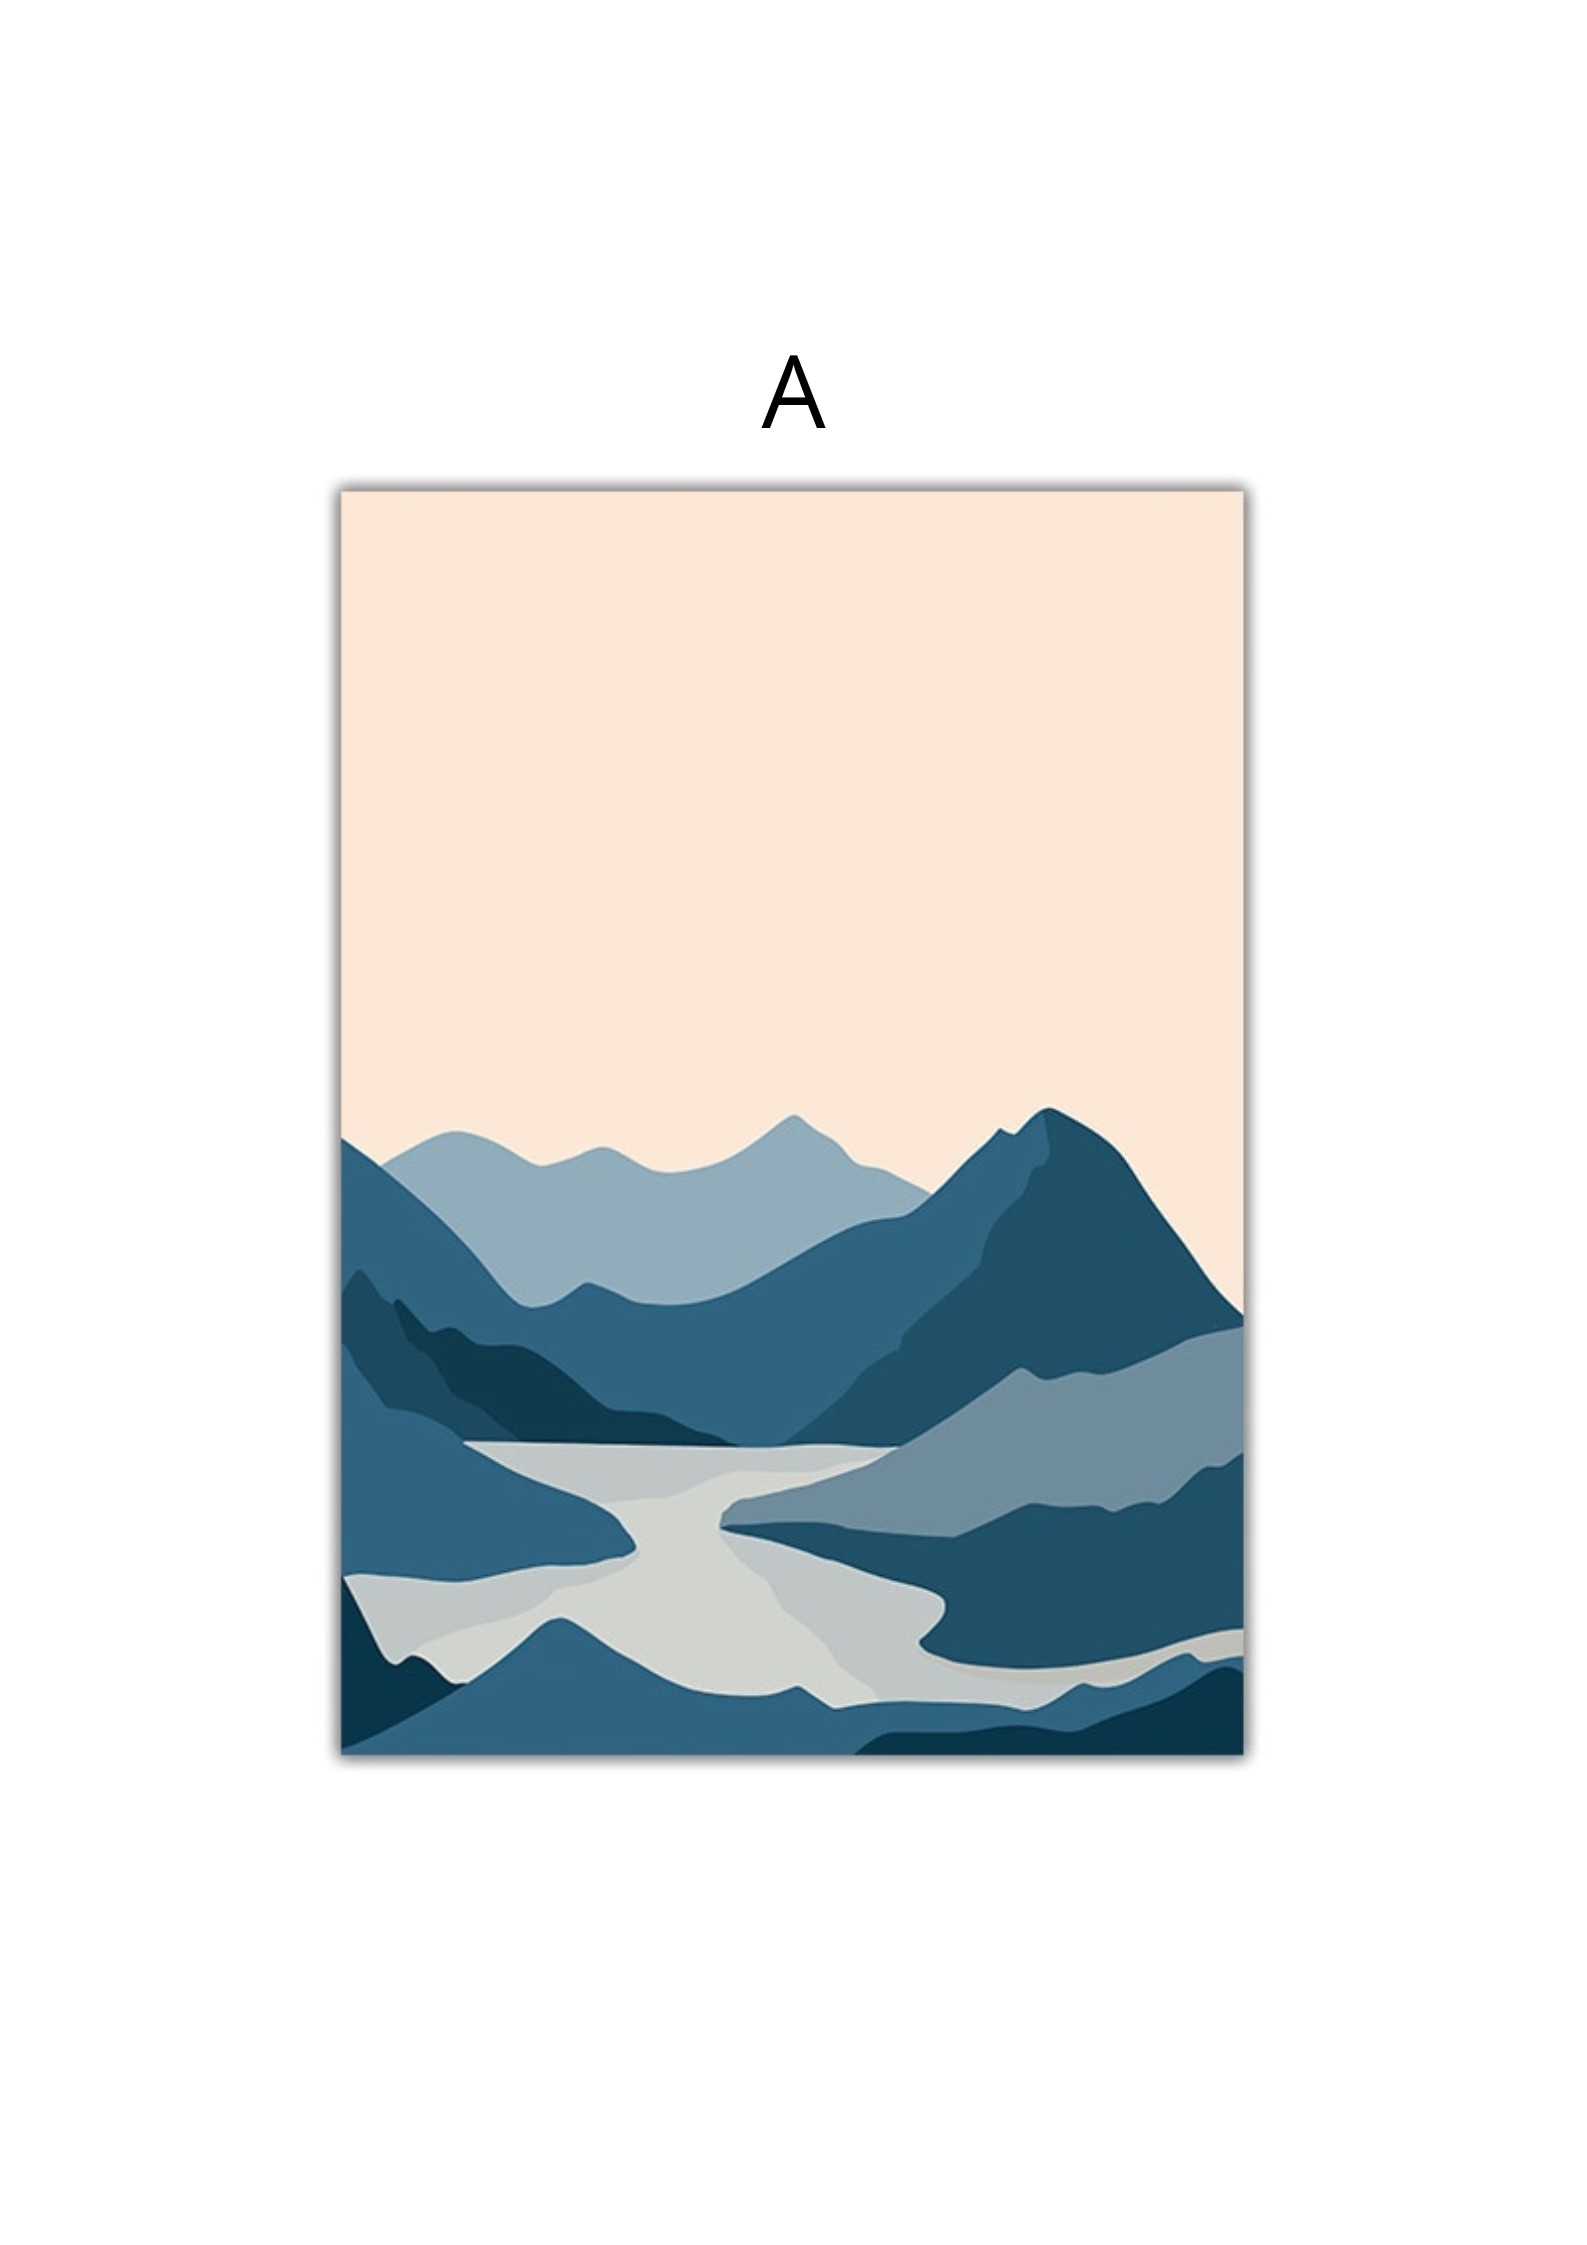 Mountain Sunset Lake Print